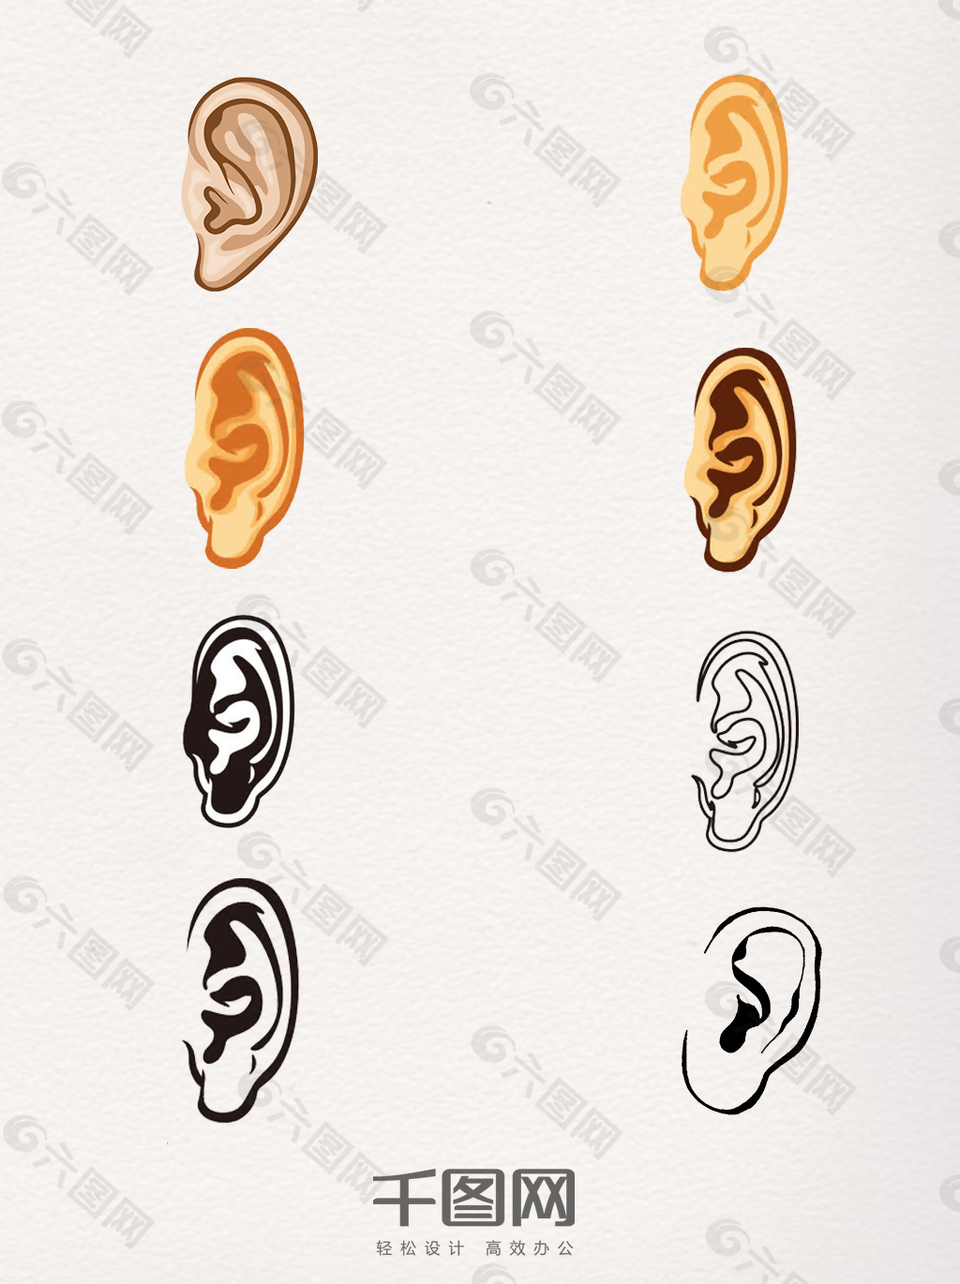 一组手绘人体耳朵图片